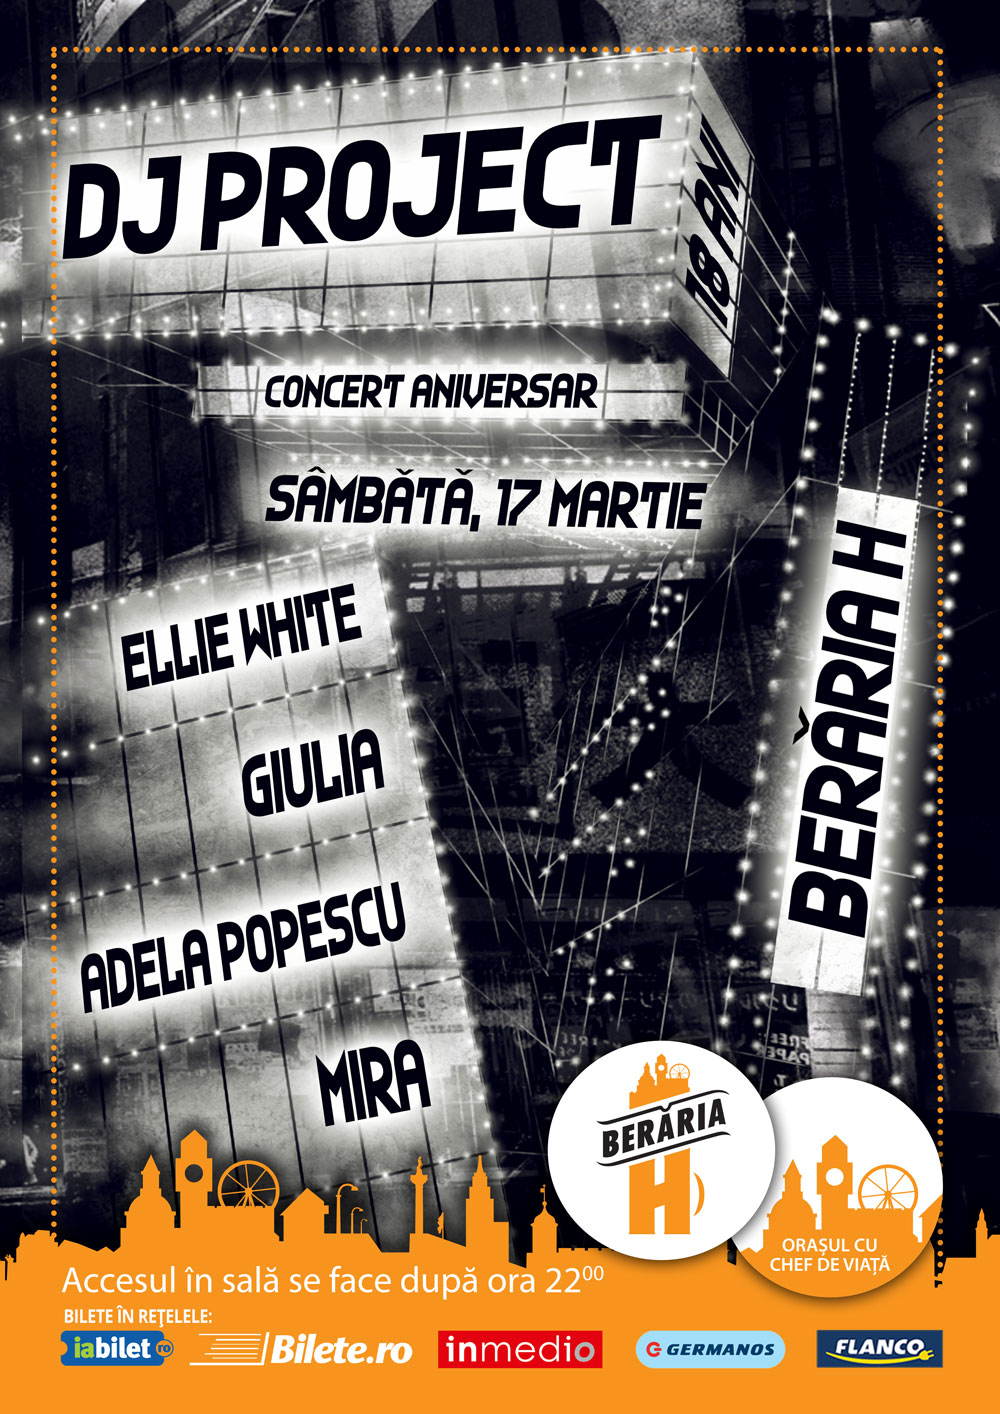 Dj Project 18 Ani Concert Aniversar La Berăria H